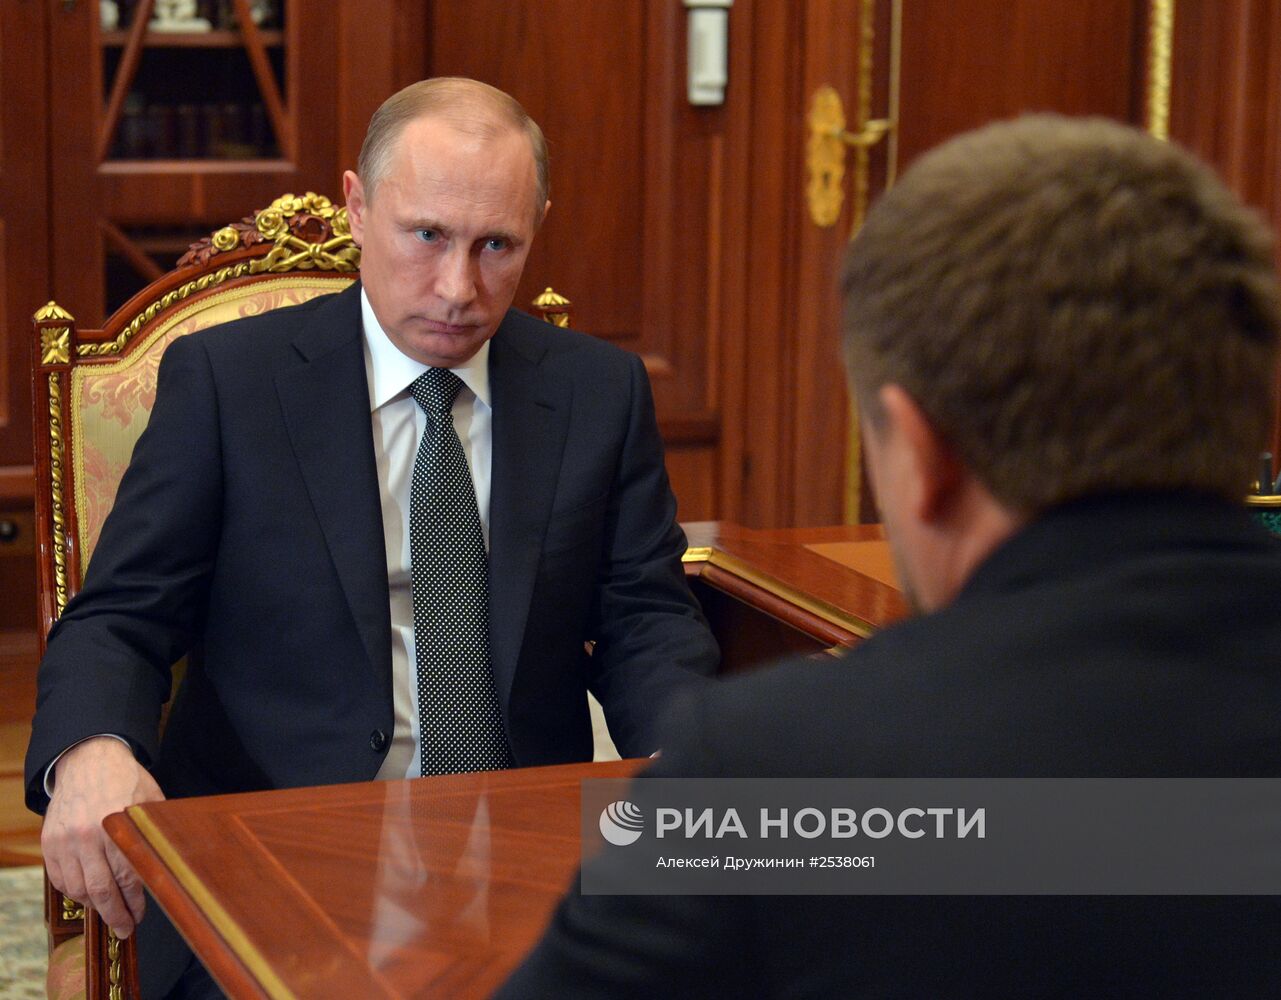 Рабочая встреча В.Путина с Р.Кадыровым